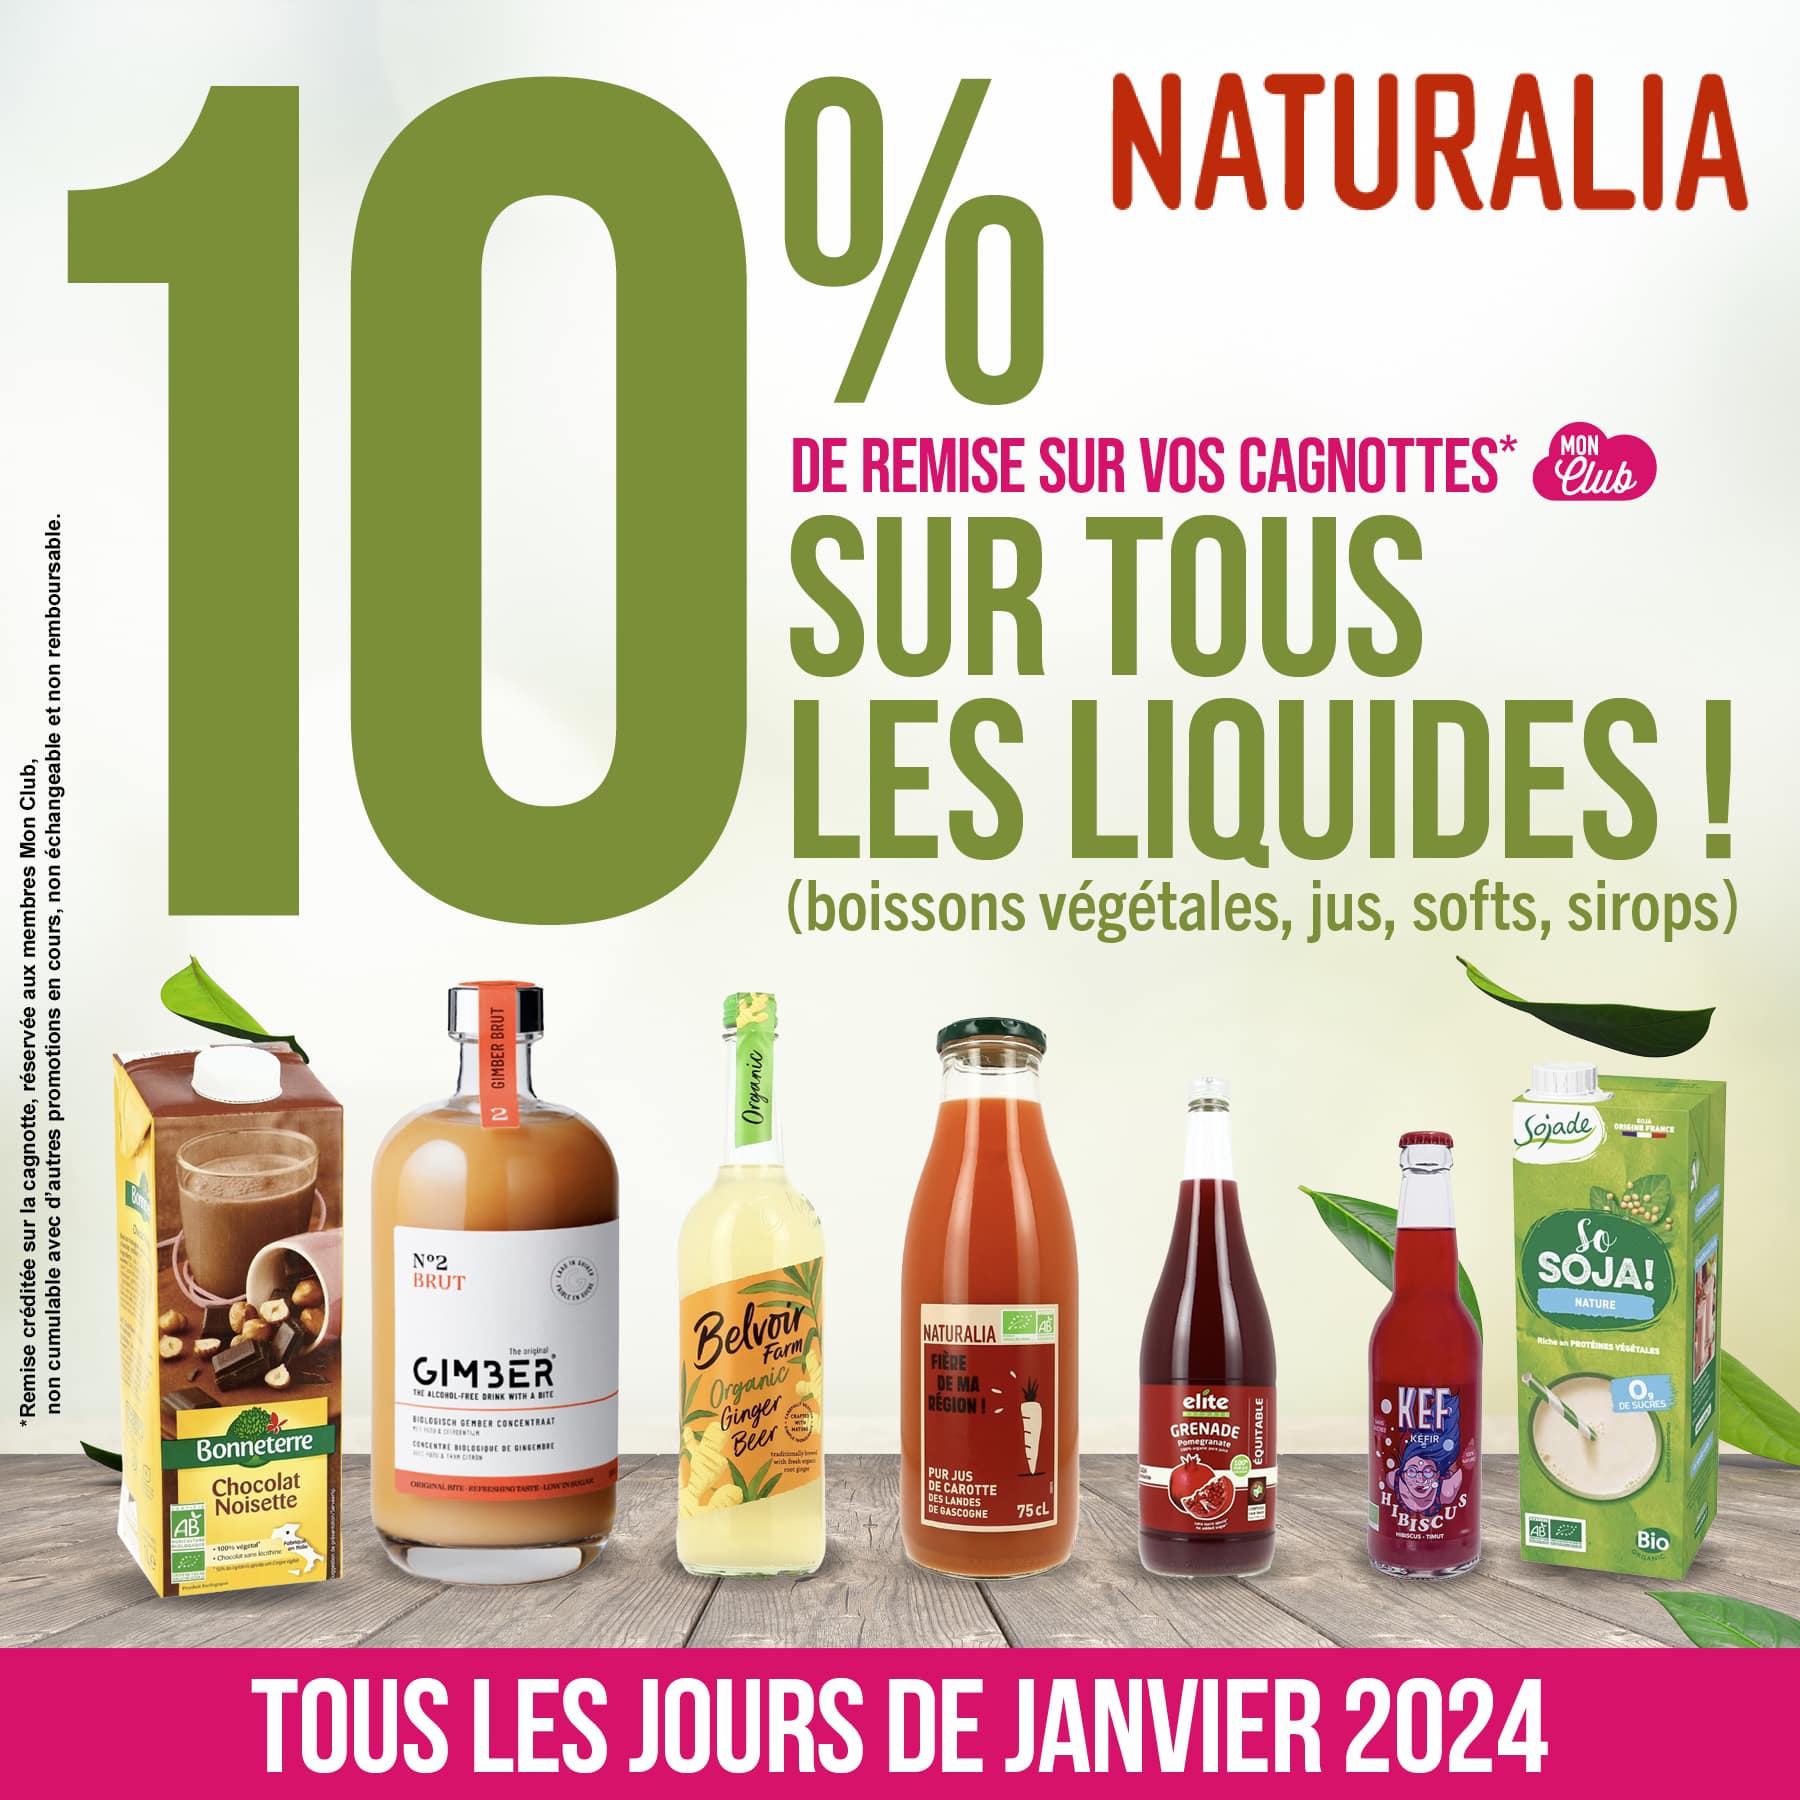 🧉 Offre Naturalia du mois de janvier 2024 😋